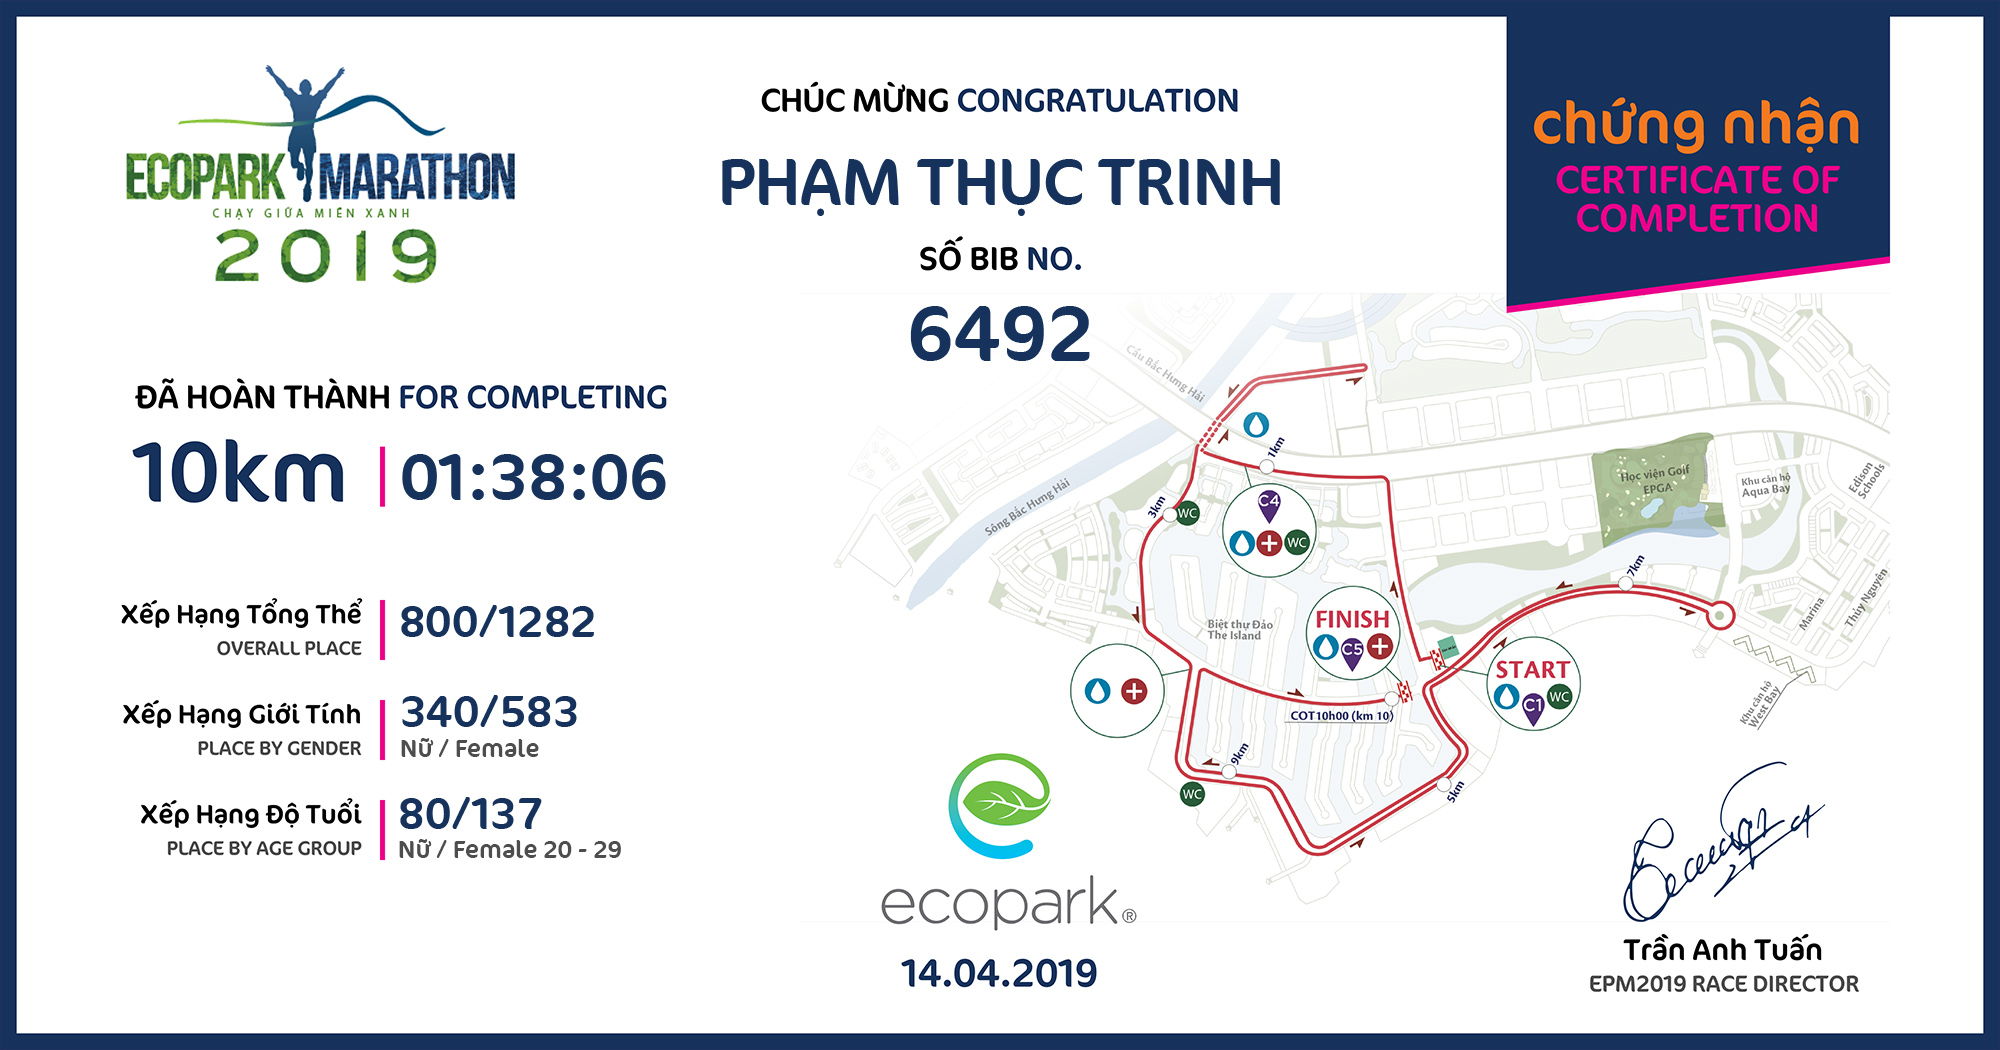 6492 - Phạm Thục Trinh